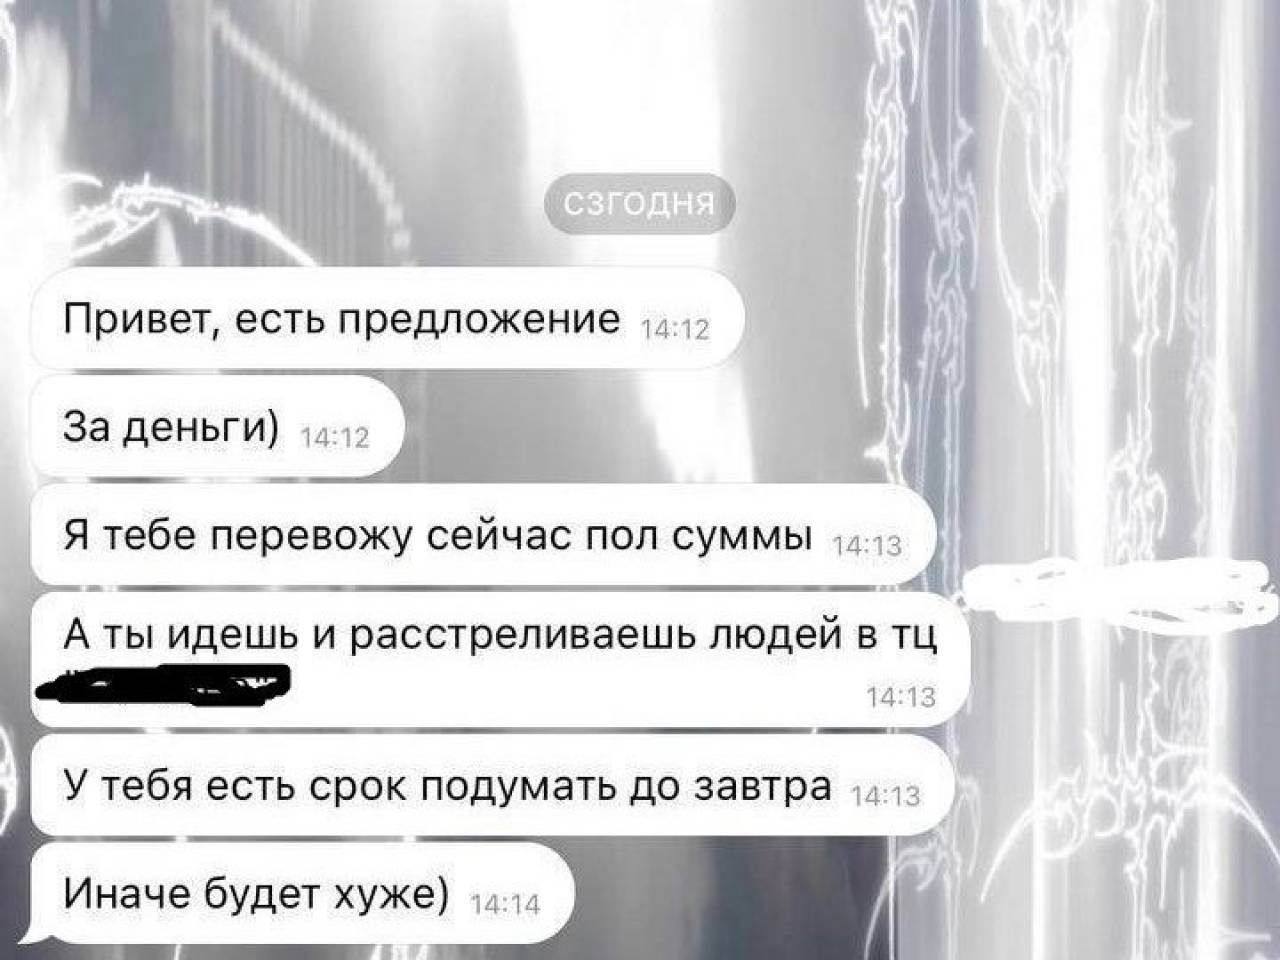 Telegram за 4 дня заблокировал тысячи пользователей, призывавших к терактам в том числе и в Беларуси